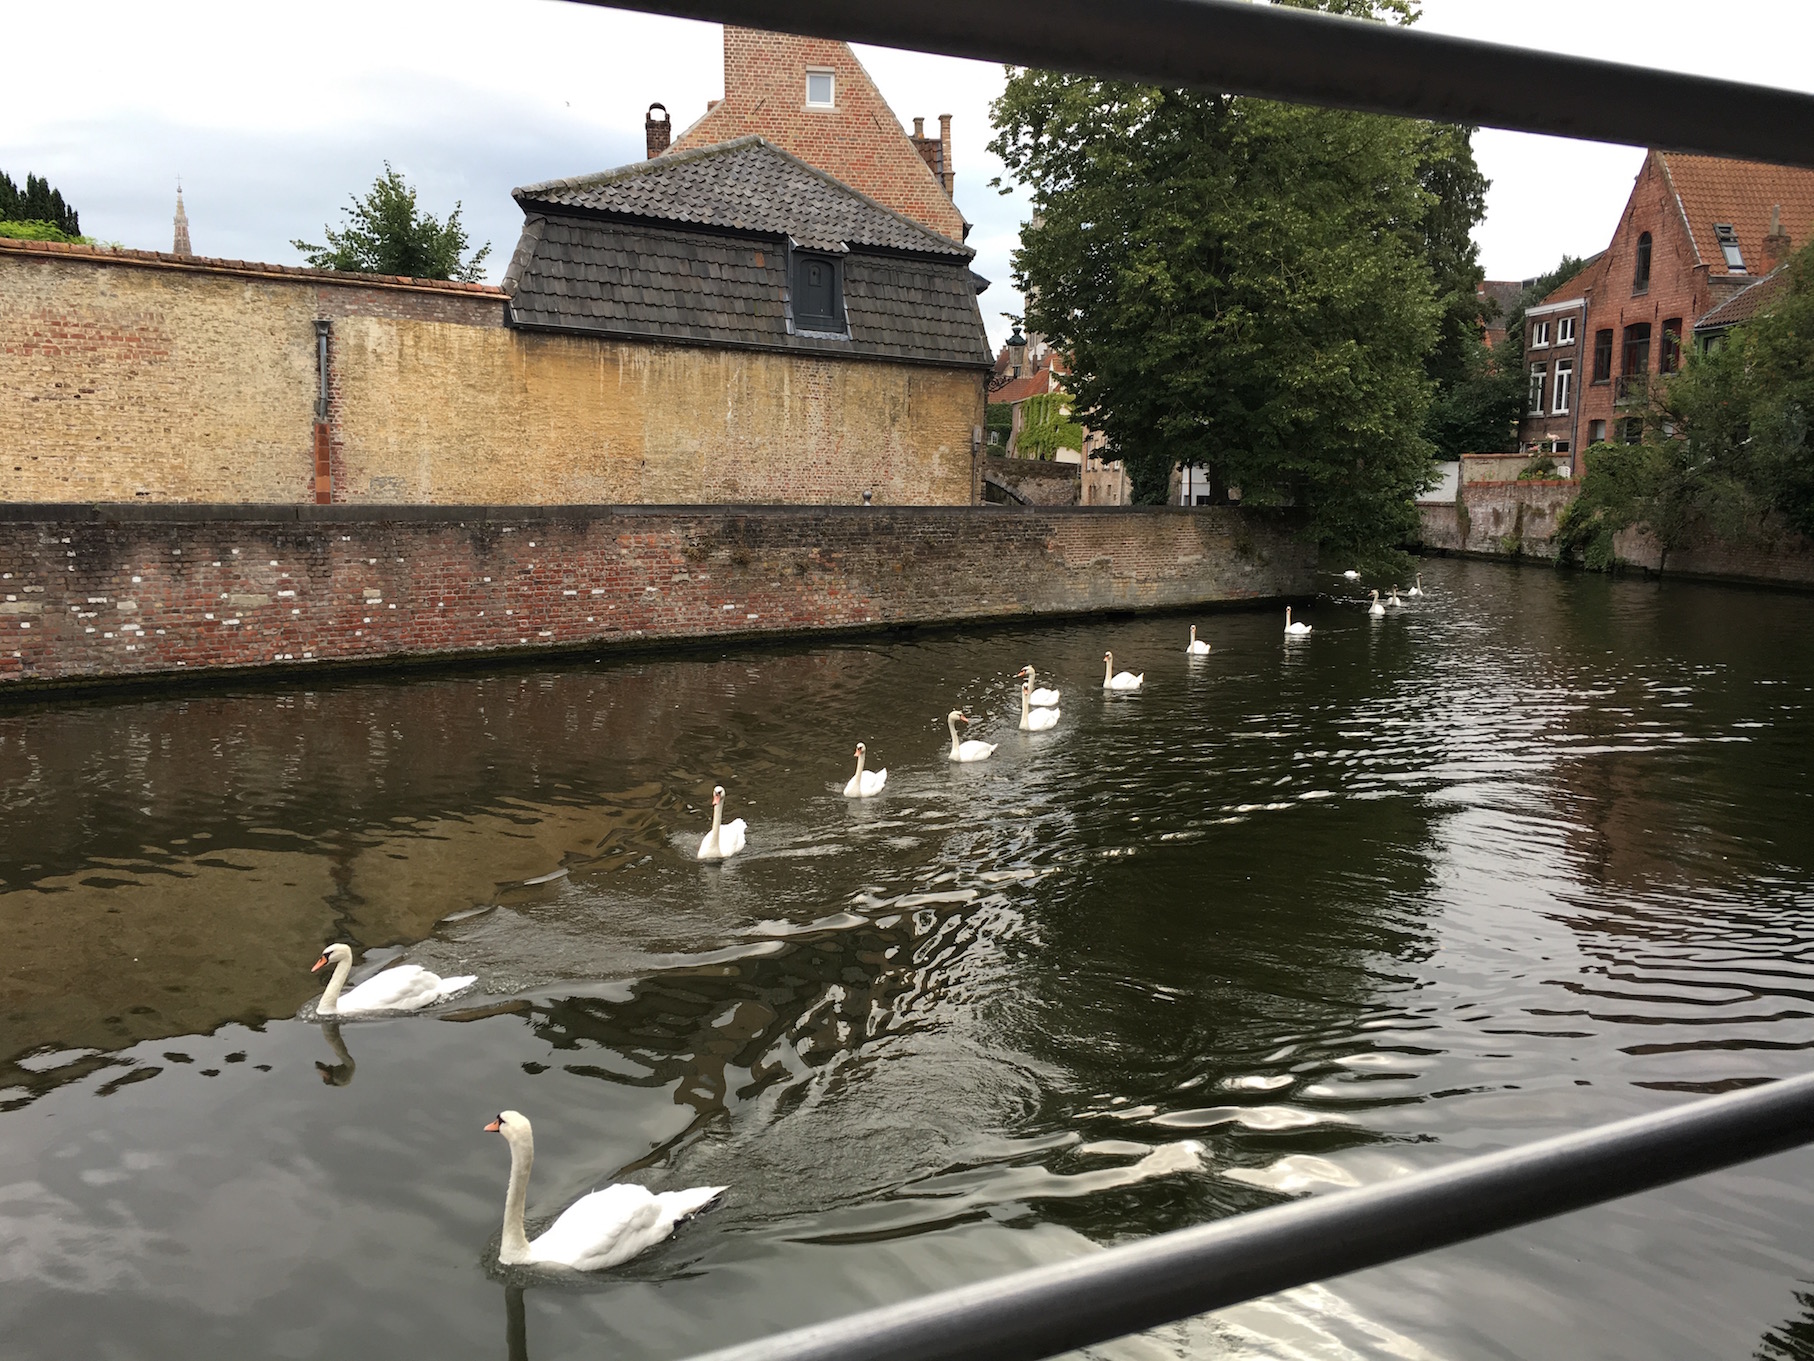 Swanning around Bruges